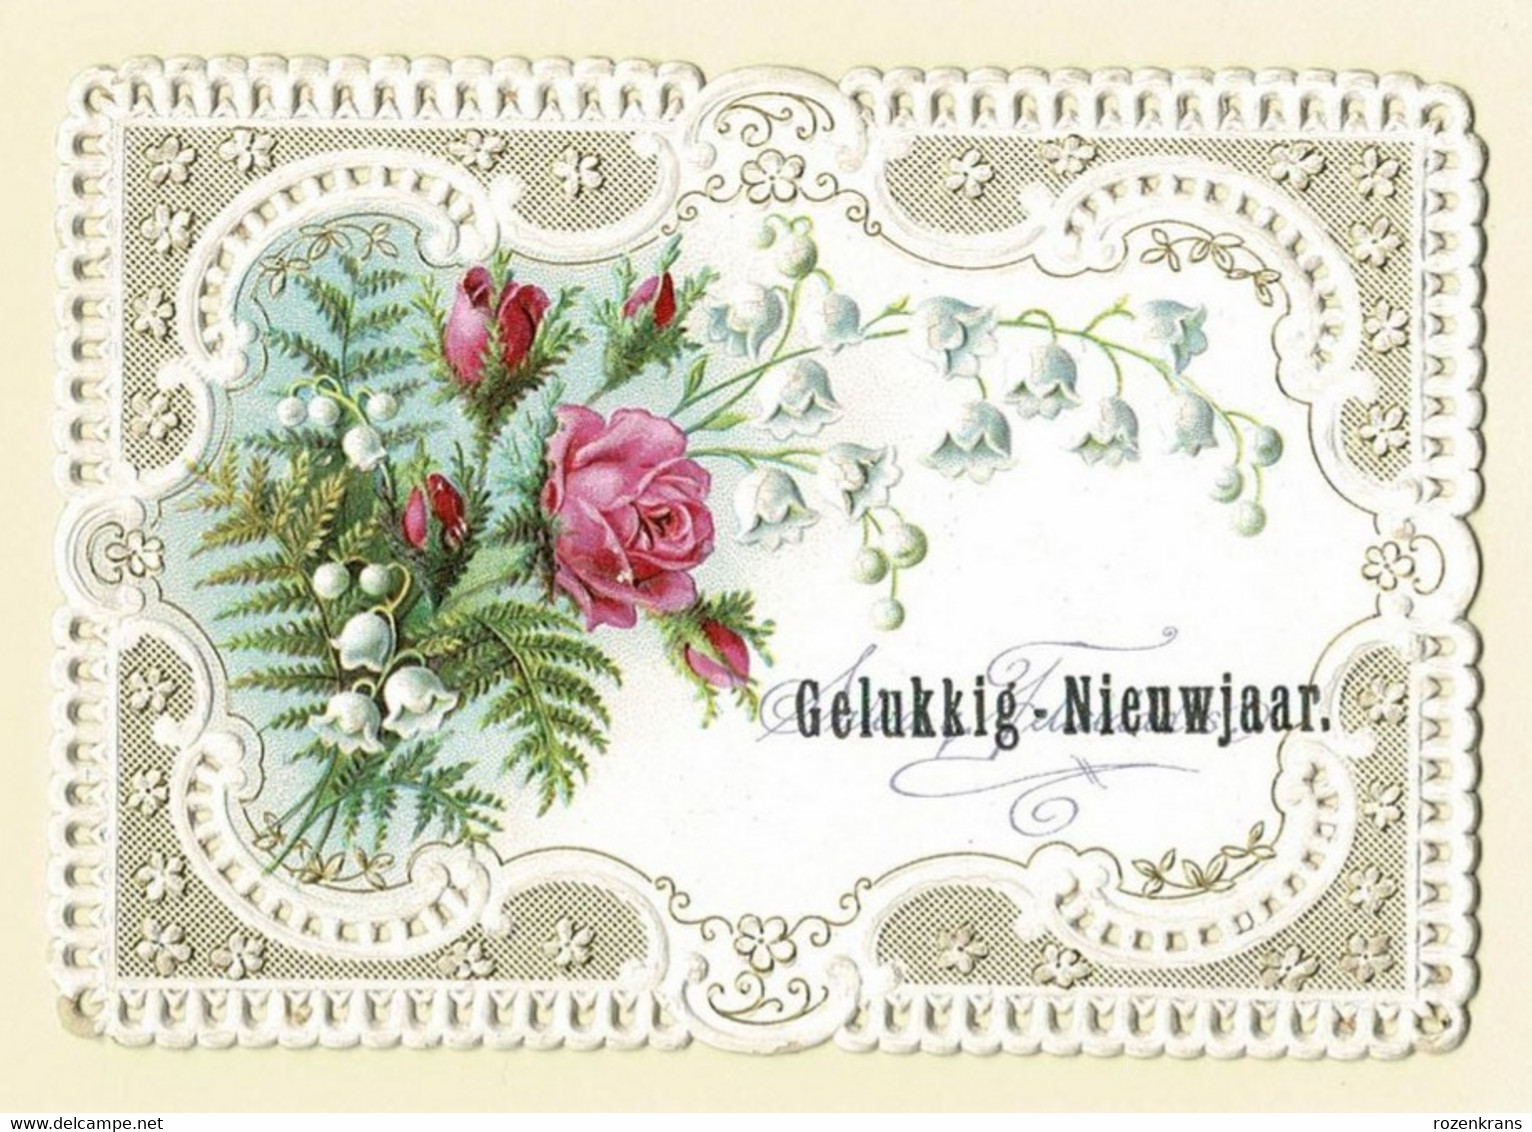 Bonne Annee Gelukkig Nieuwjaar Carte Dentellee Gaufree Embossed Canivet Fleurs Flowers Fam Mutsaers Tilburg - Bloemen